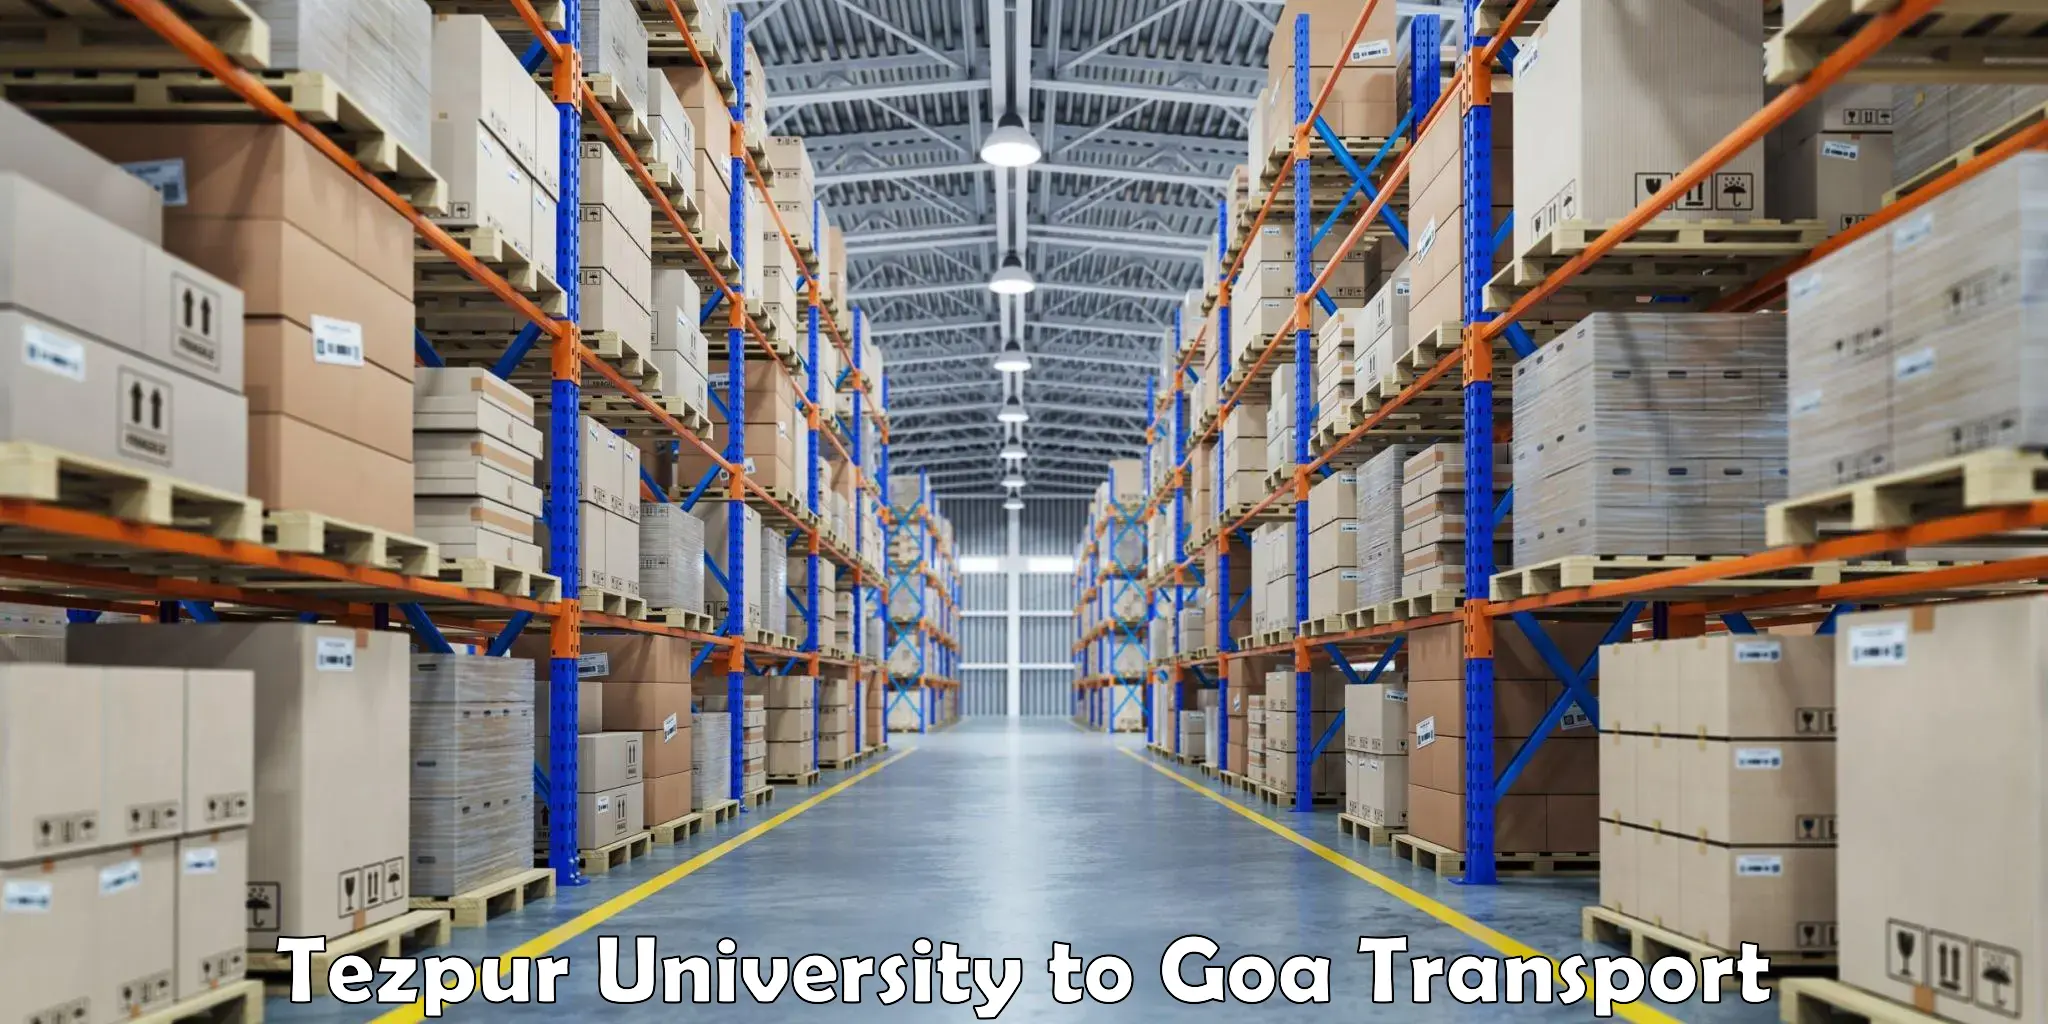 Furniture transport service Tezpur University to Goa